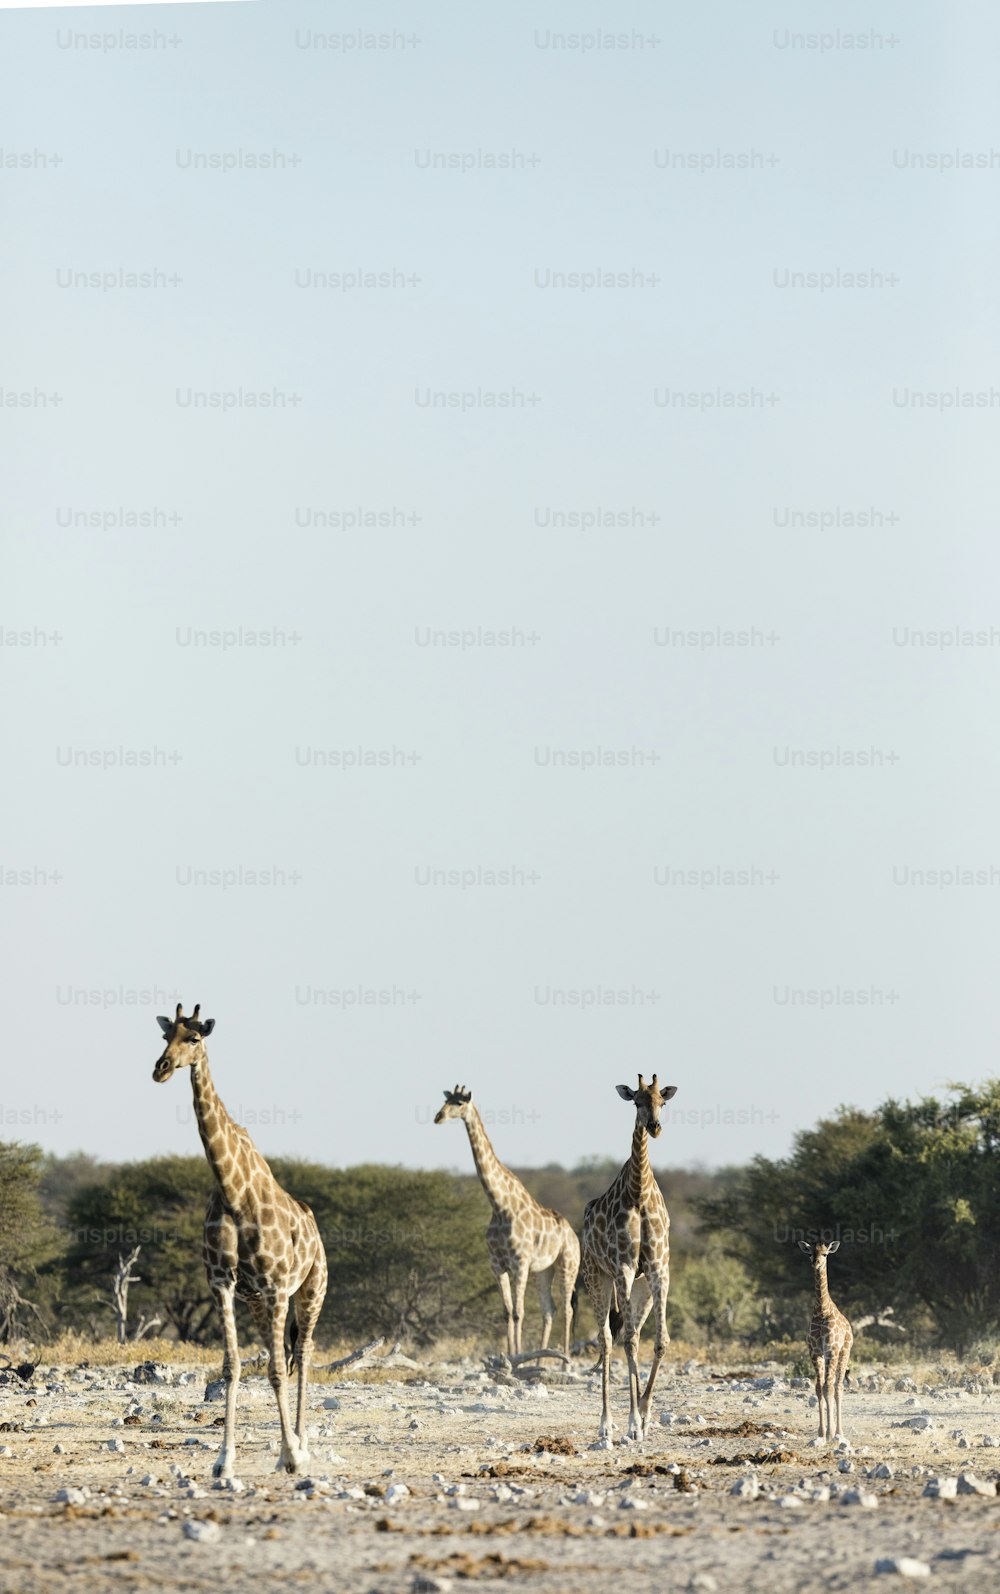 Eine Giraffenfamilie in Etosha National P:ark, Namibia.